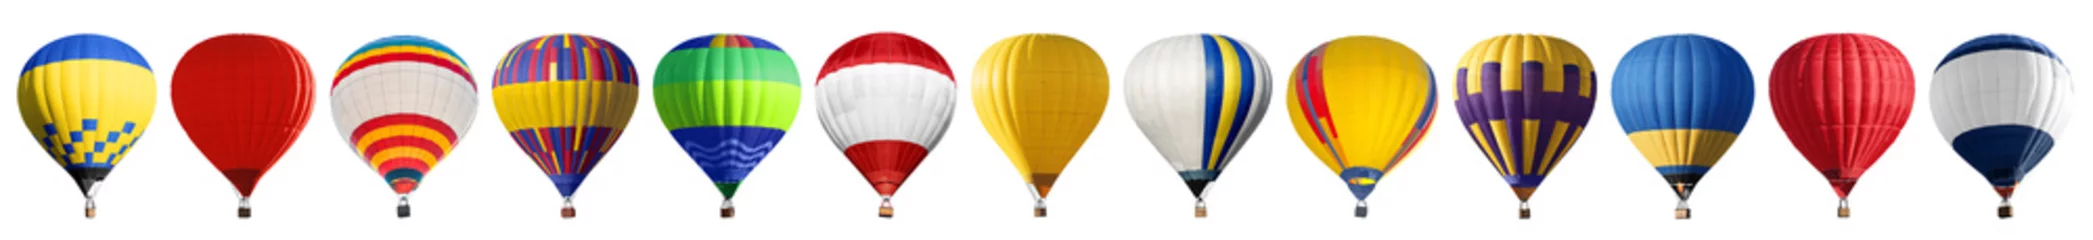 Fotobehang Ballon Set van heldere kleurrijke hete lucht ballonnen op witte achtergrond